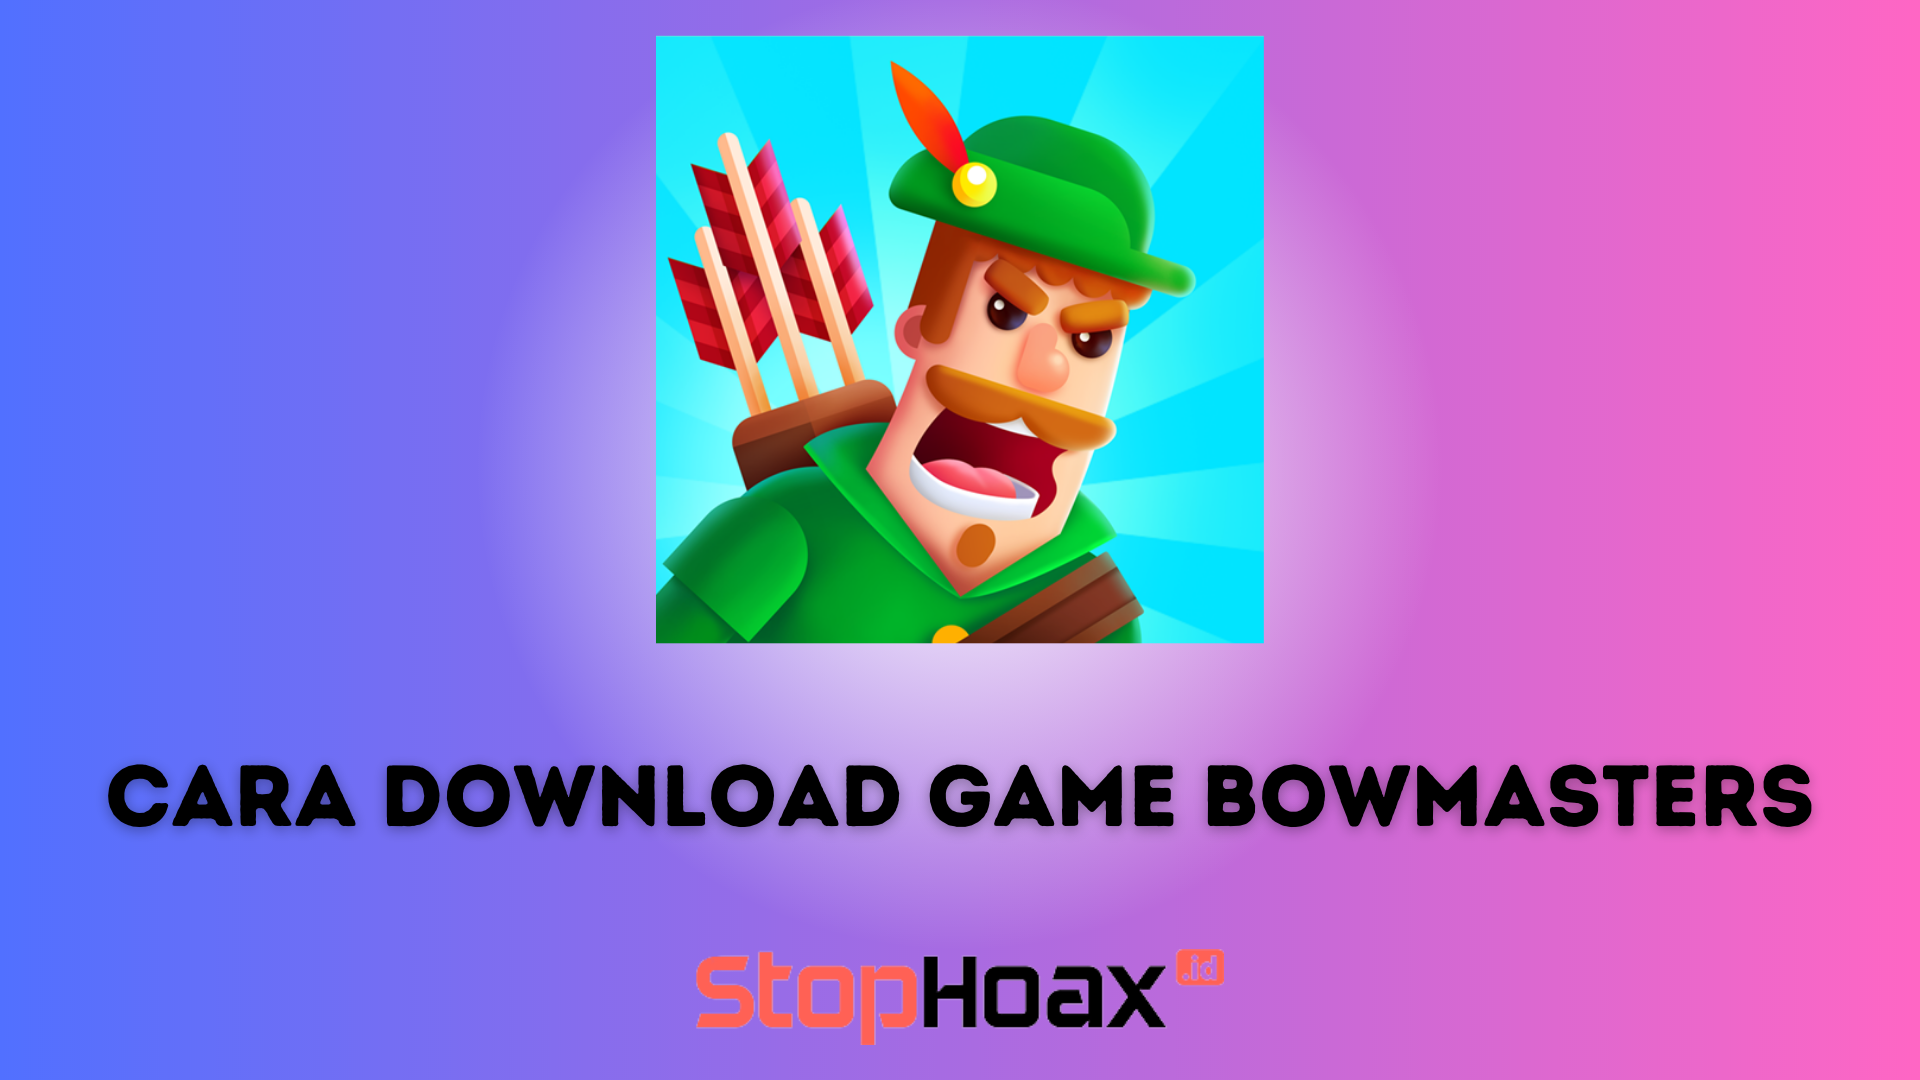 Mudah dan Cepat Cara Download Game Bowmasters versi Terbaru di Android